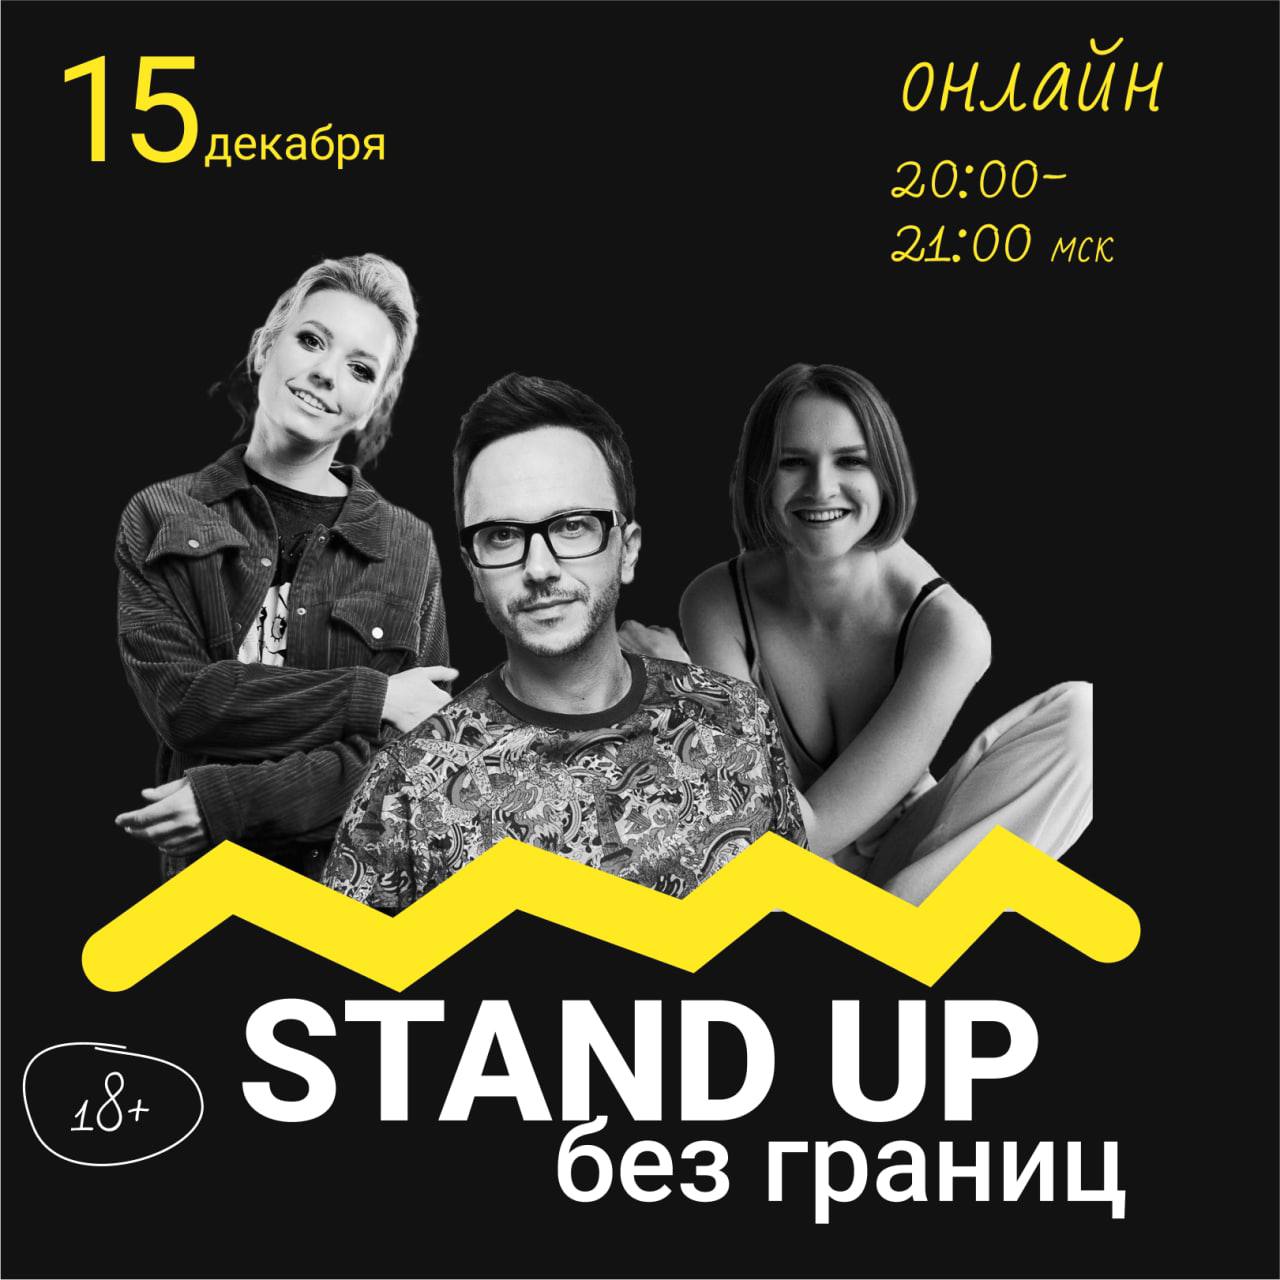 Беларус-гей приглашает на онлайн «Stand Up без границ»